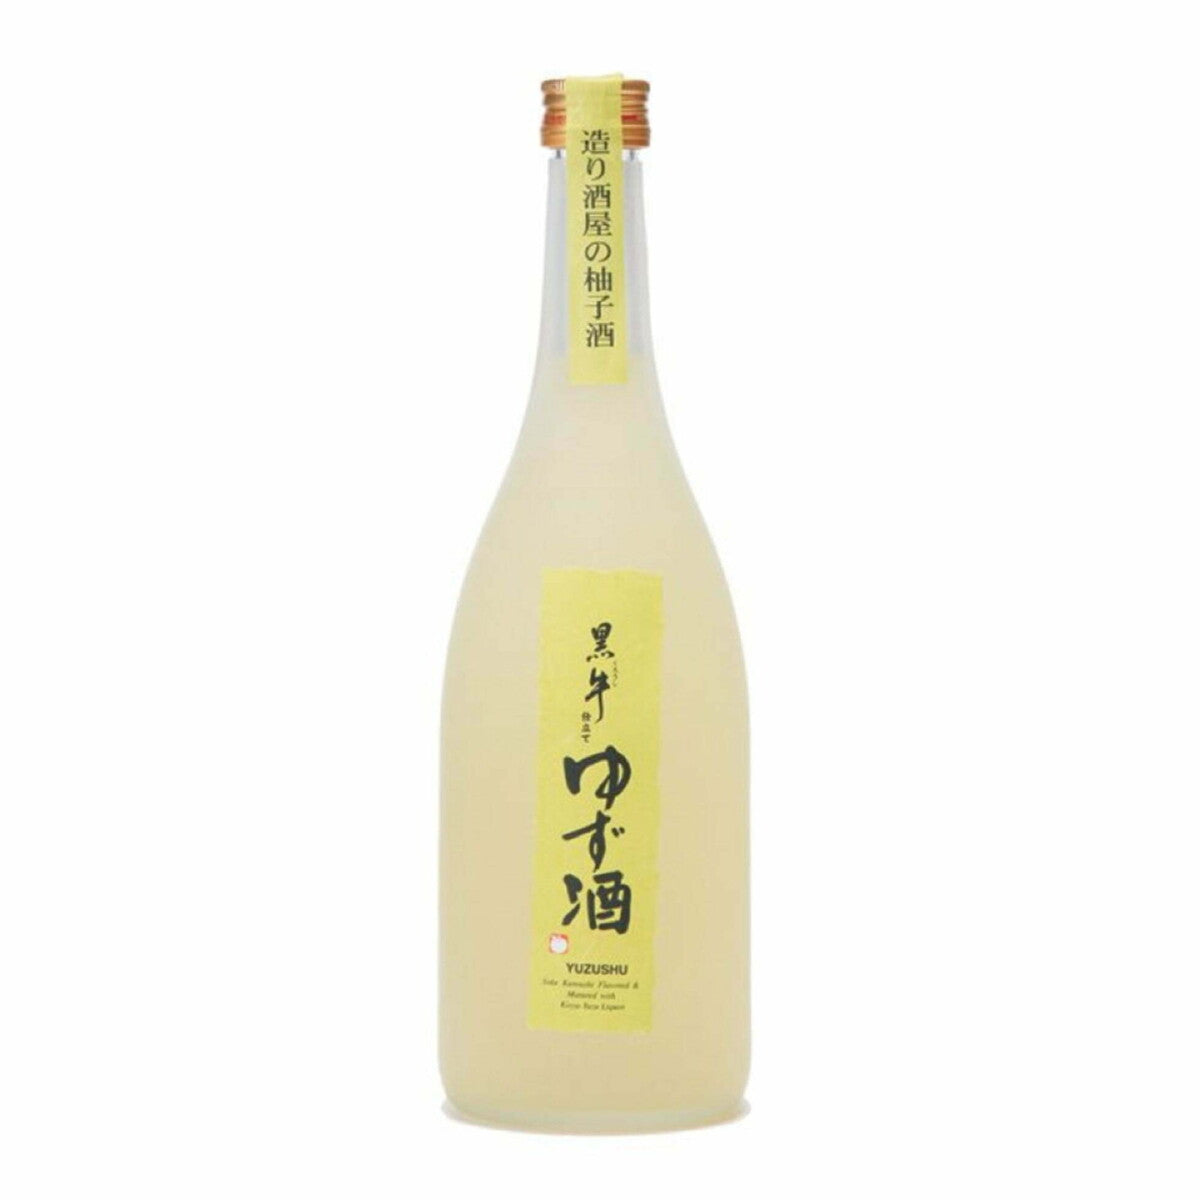 黑牛 特製 柚子酒 Kuroushi Shitate Yuzu Liqueur (1x72cl)